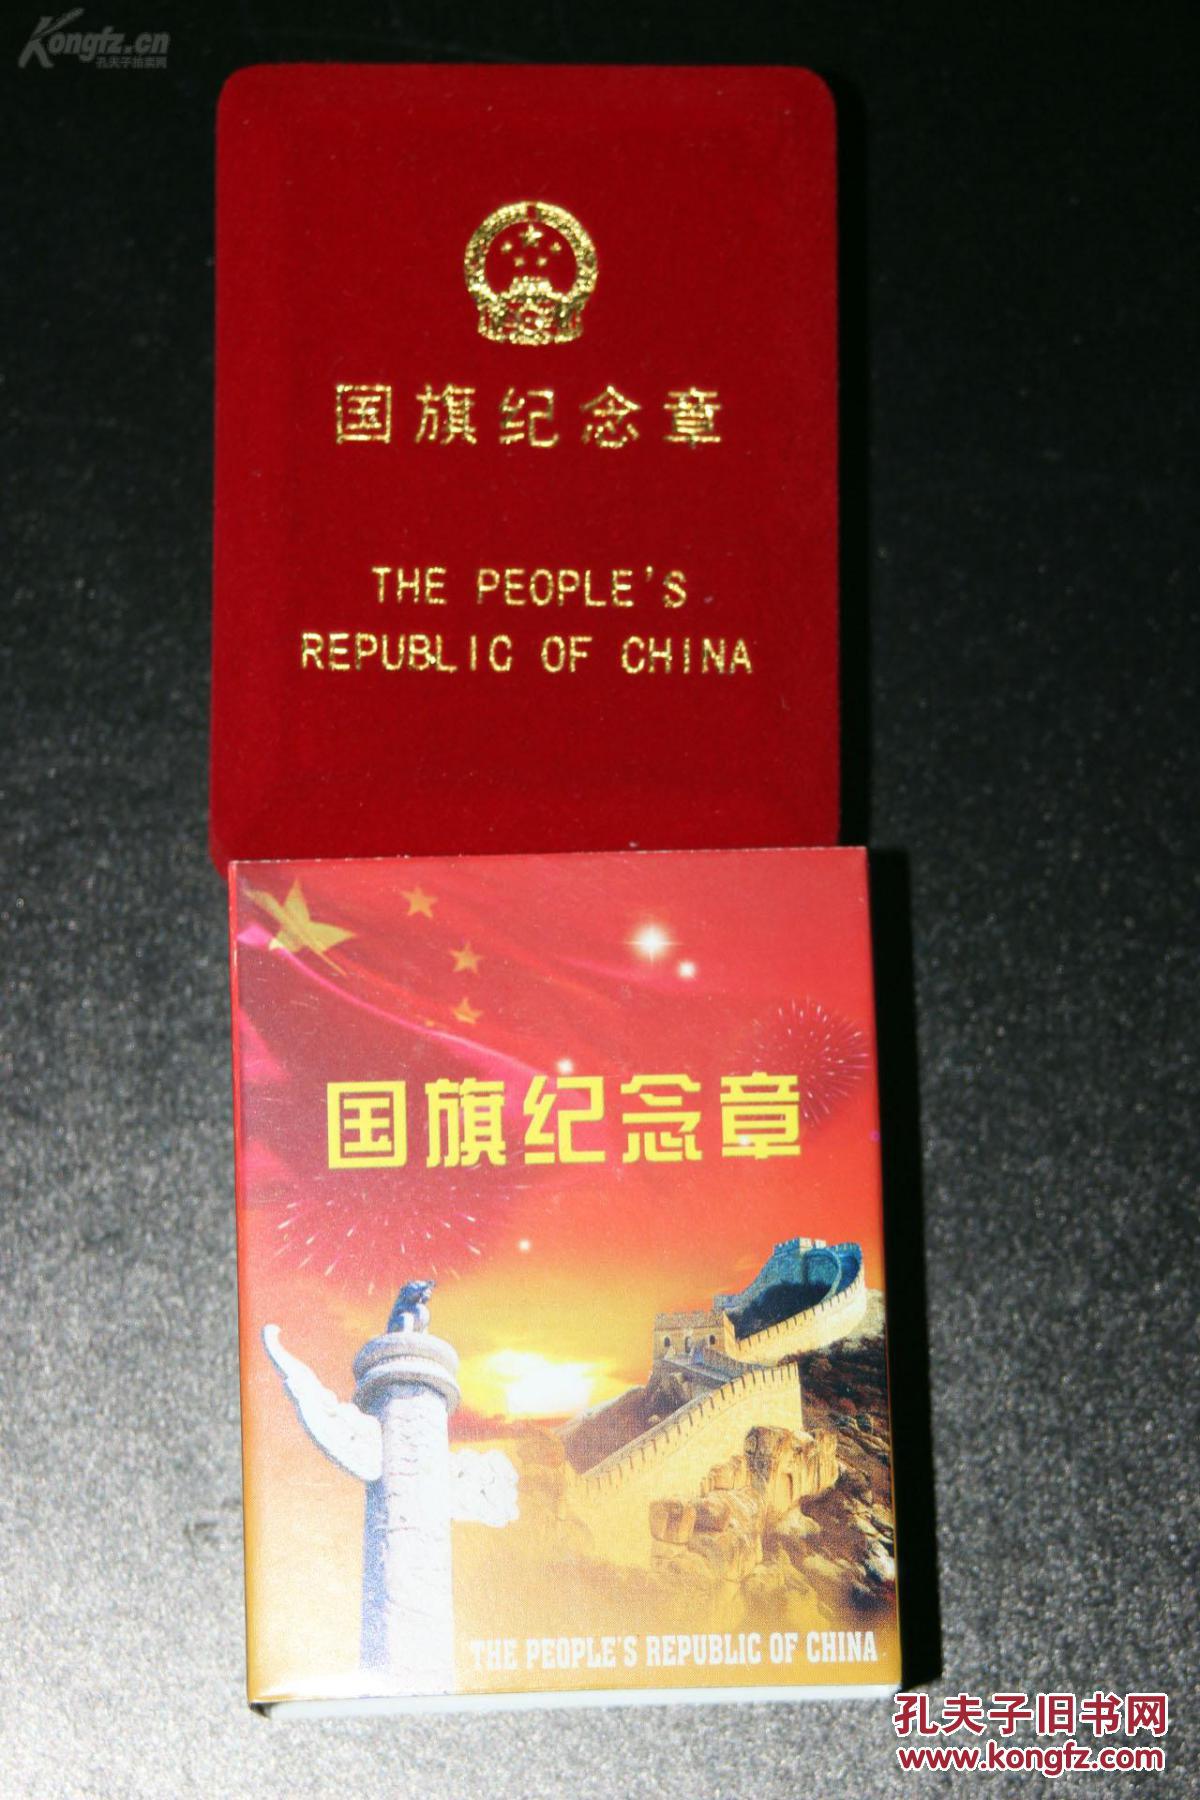 【图】中国国旗纪念章 全新 非常有意义的藏品